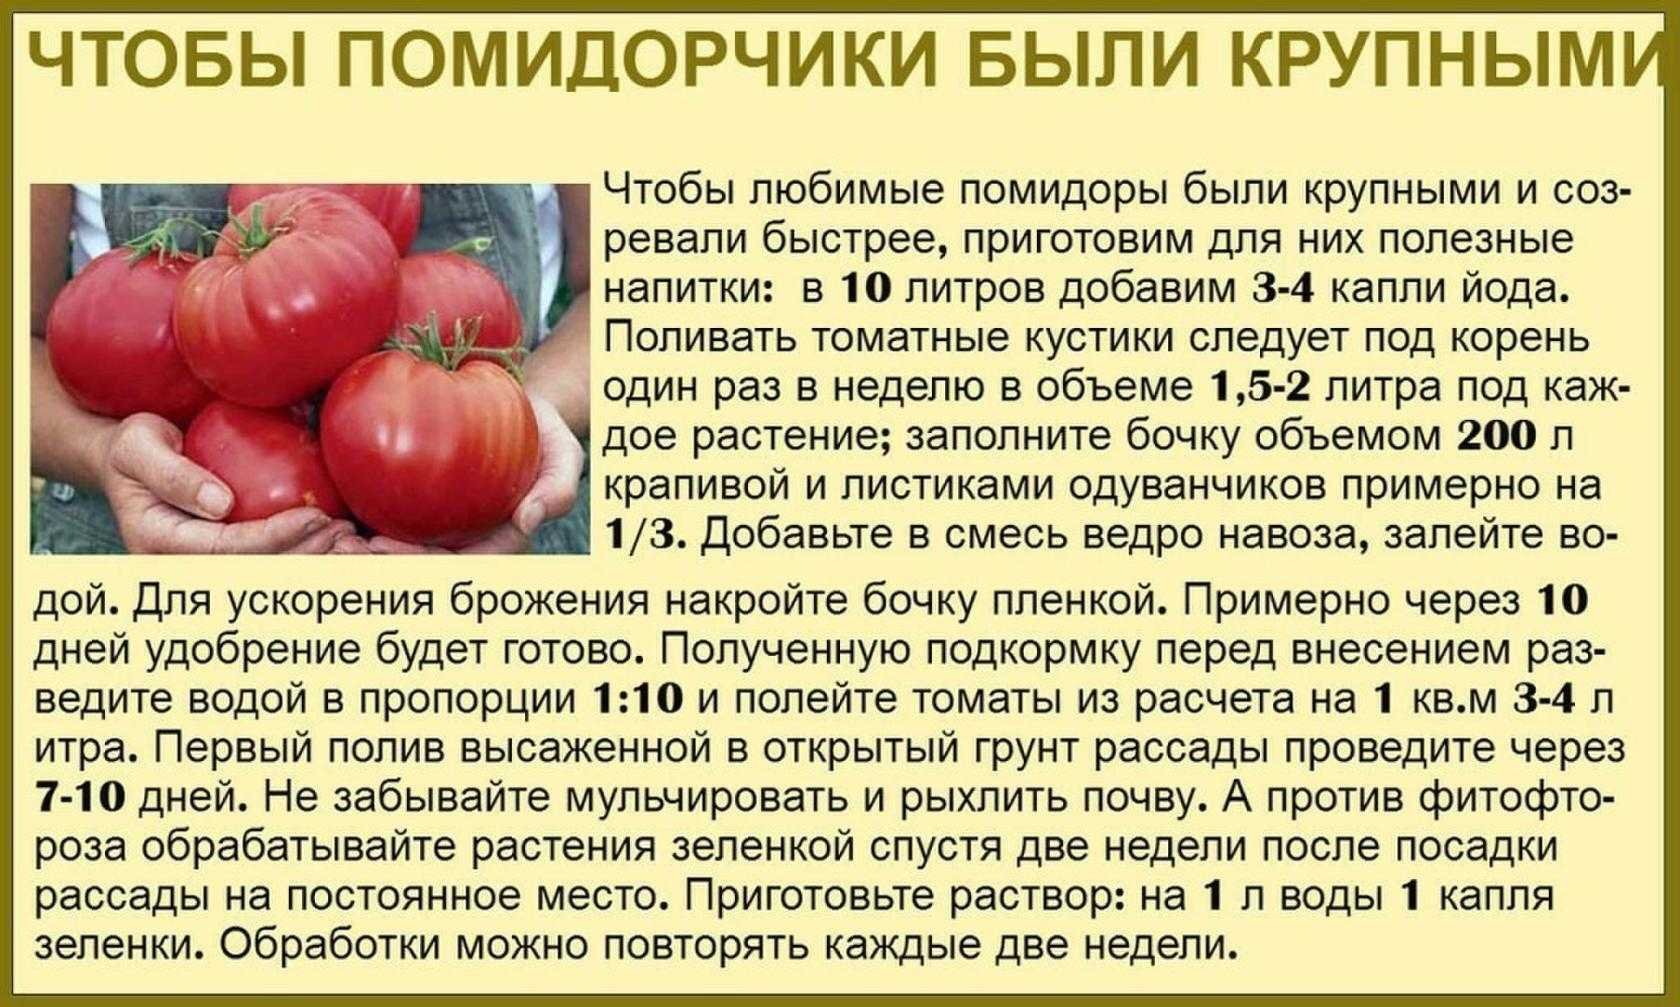 Помидор сколько держит. Таблица подкормки томатов. Советы садоводам и огородникам. Советы про томаты. Сад огород полезные советы томаты.